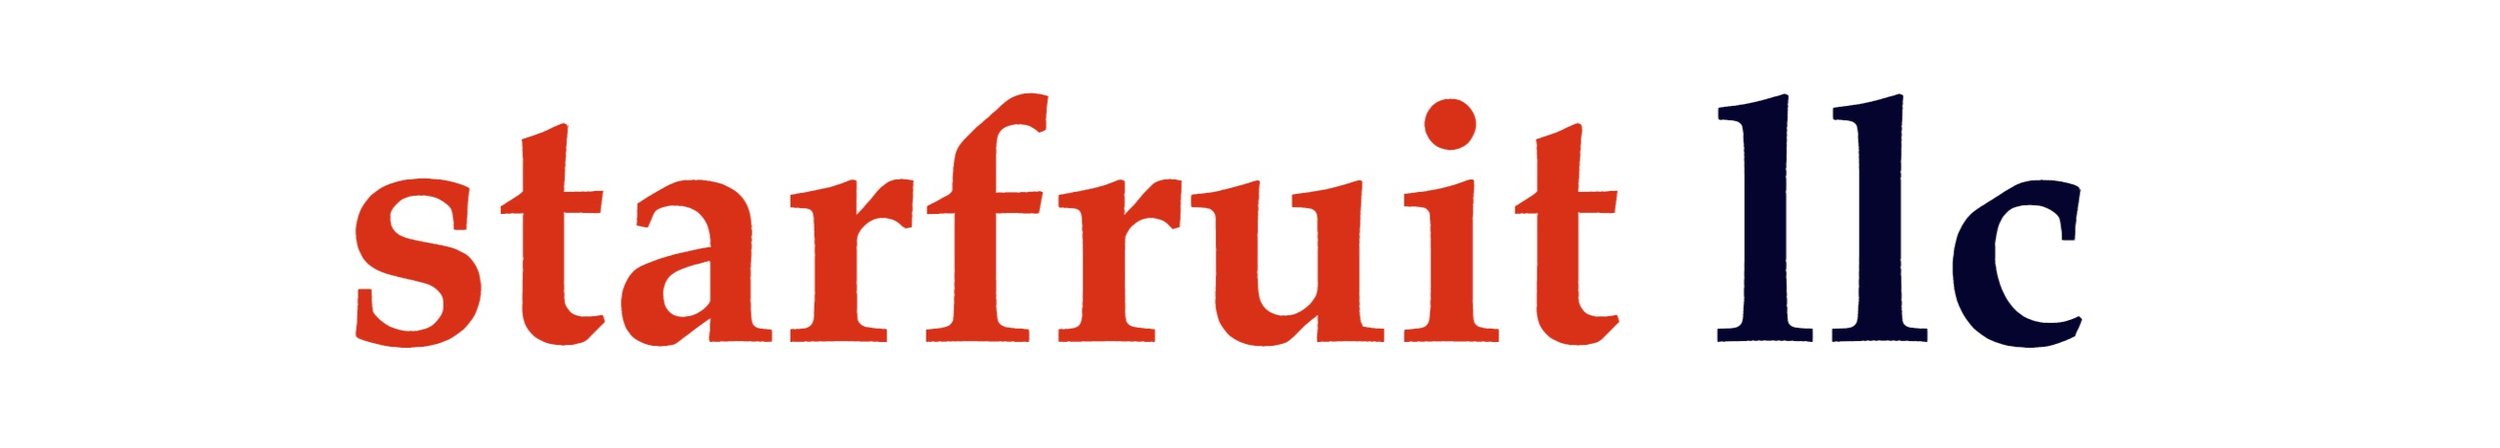 Starfruit LLC